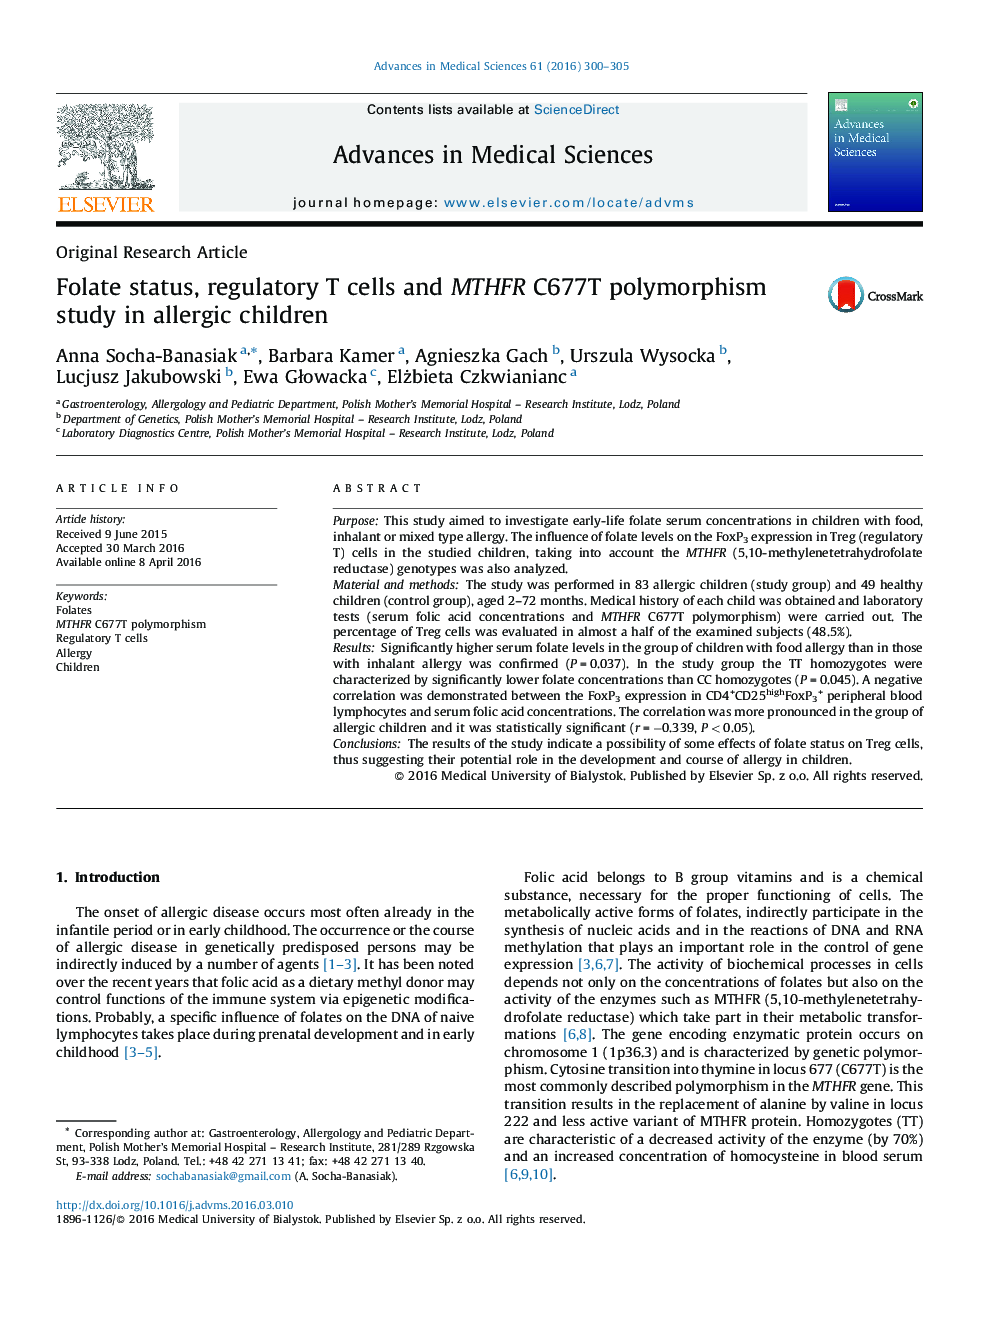 وضعيت فولات، سلولهای تنظيمی T و مطالعه پلی مورفیسم MPHFR C677T در کودکان آلرژیک